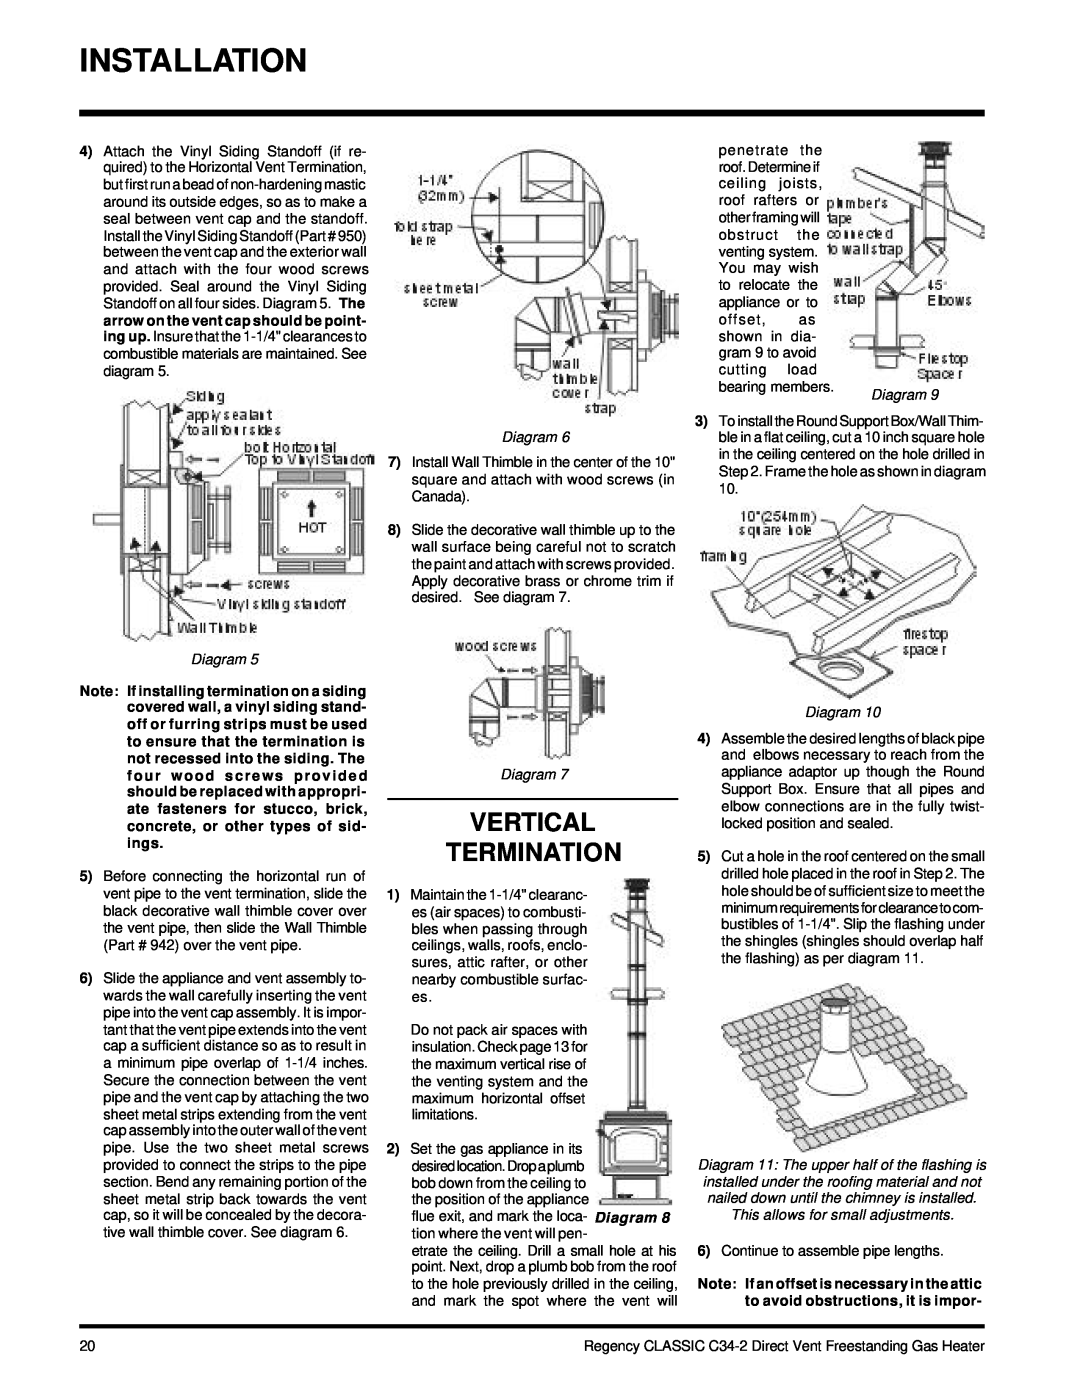 Regency C34-NG2, C34-LP2 installation manual Installation, Vertical Termination 